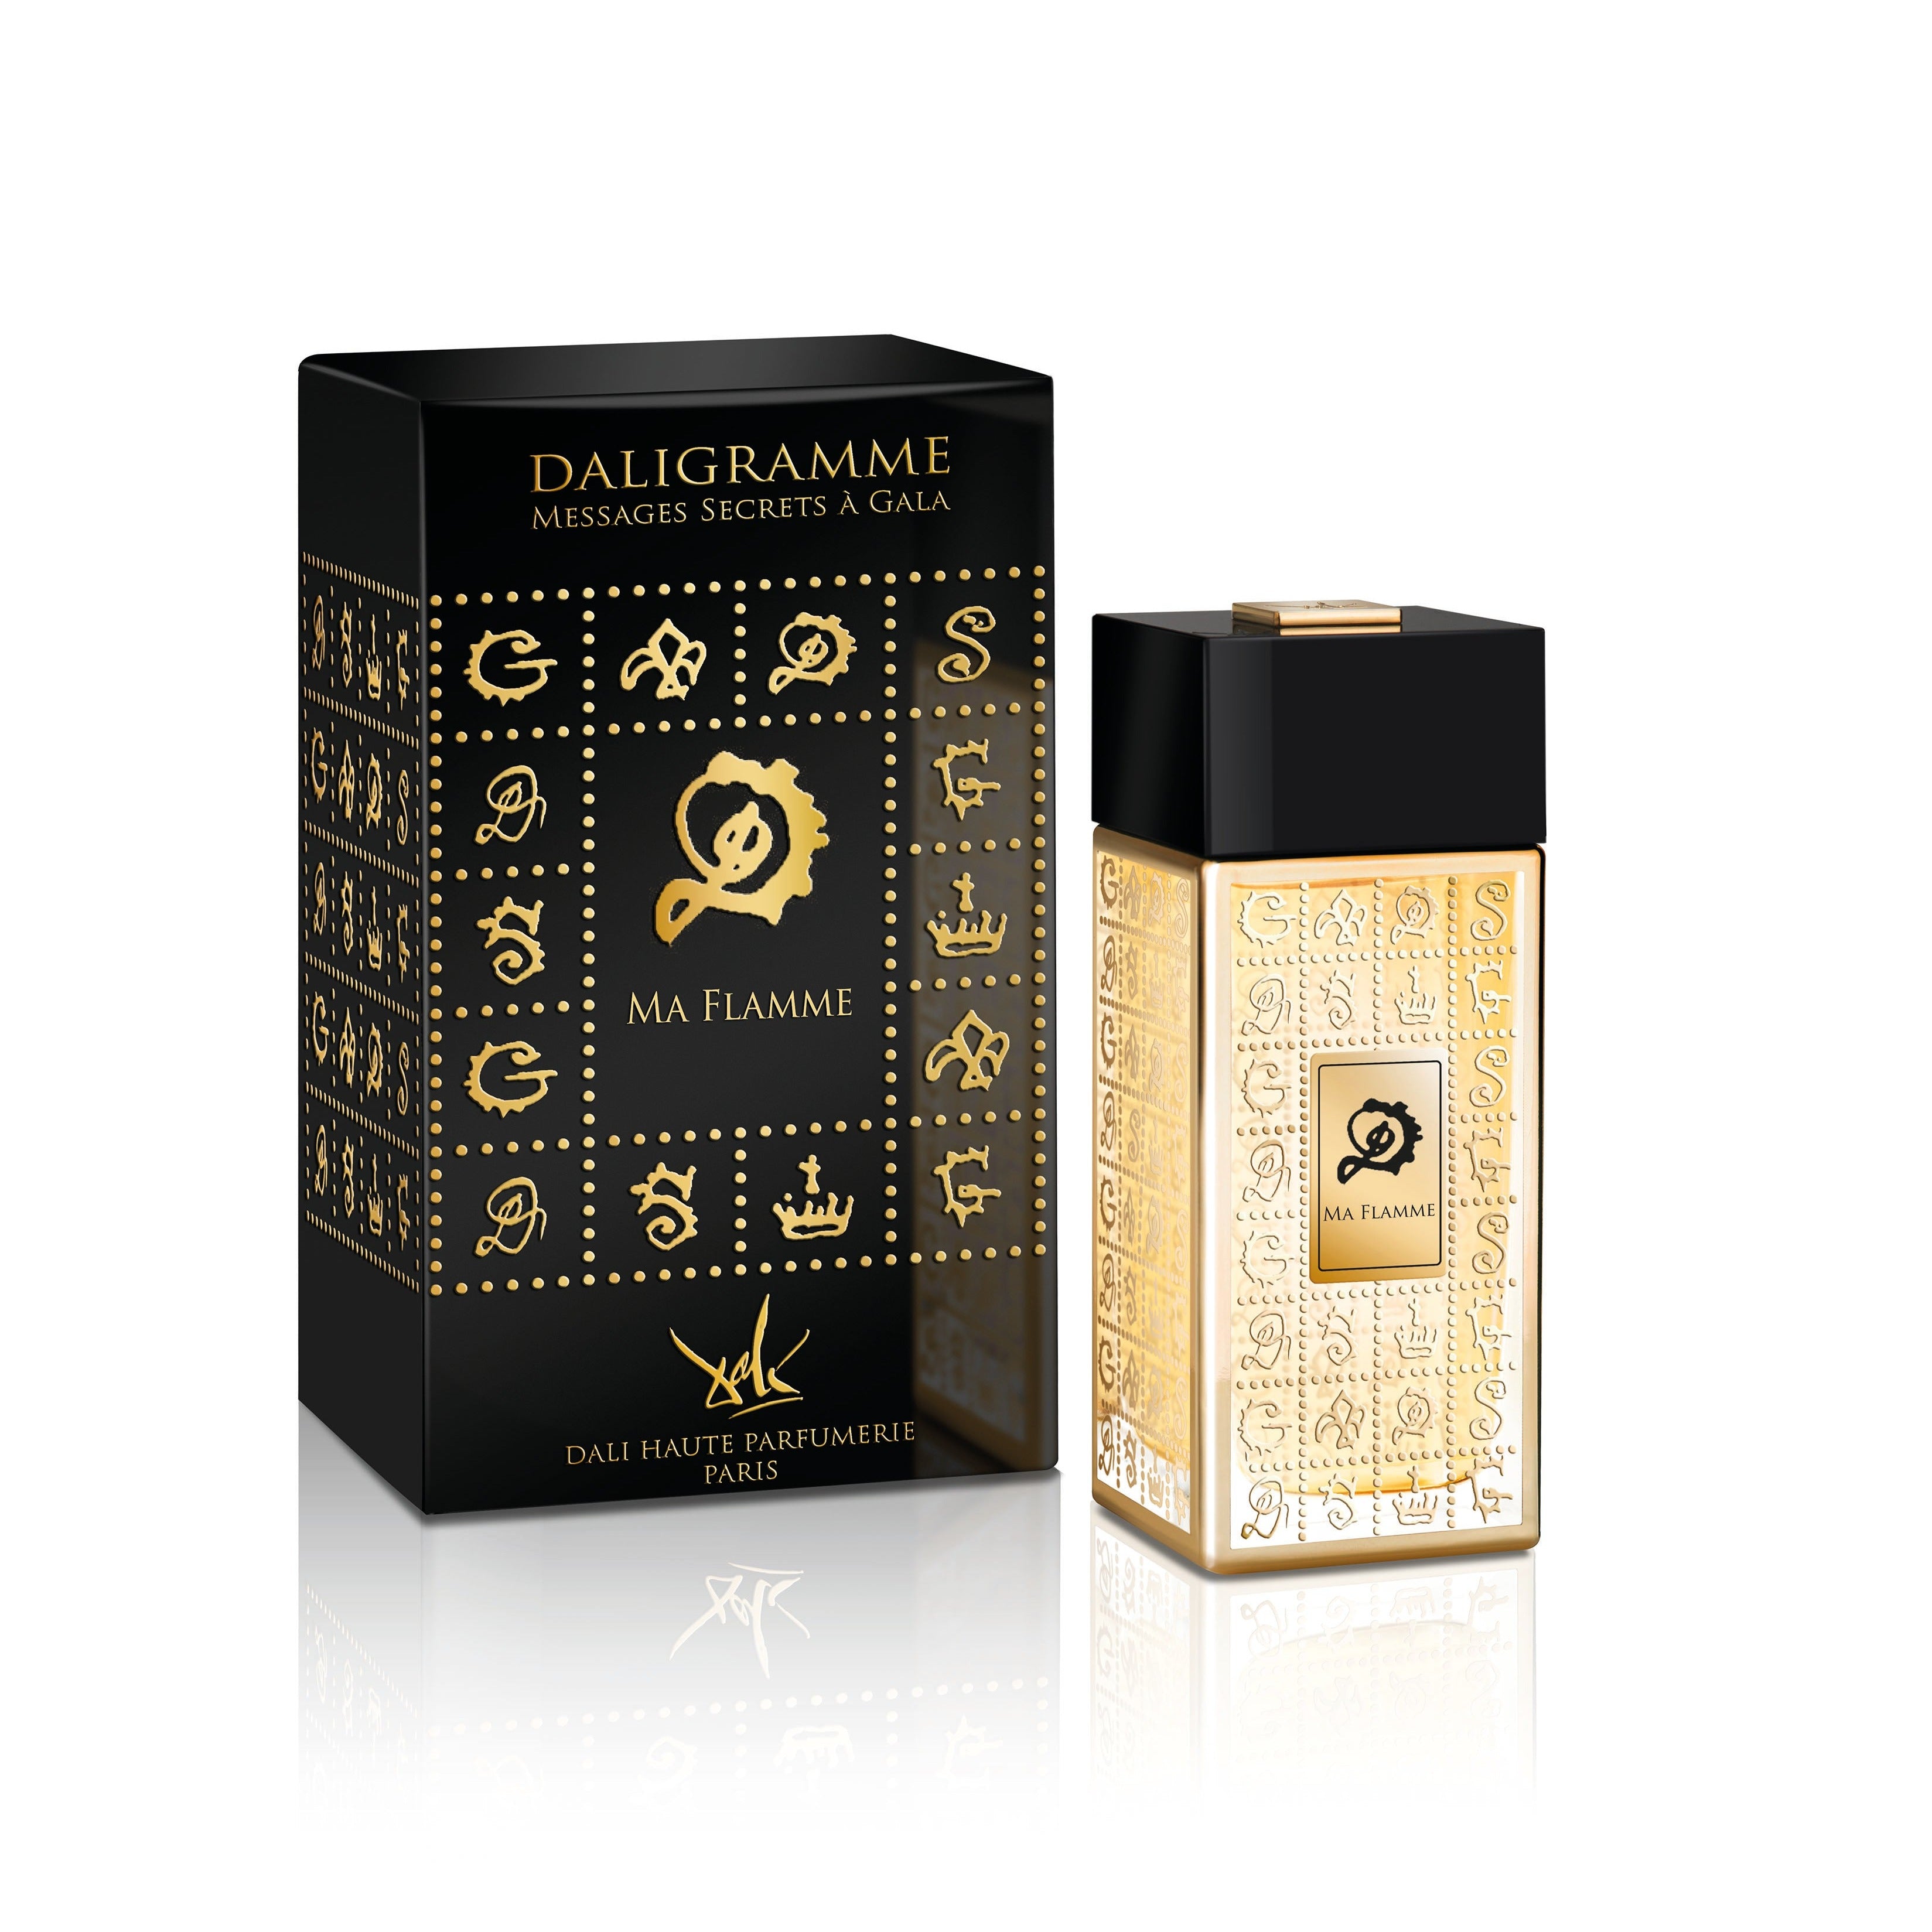 Ma Flamme Eau de Parfum 100ml Bottle and Box by Dalí Haute Parfumerie